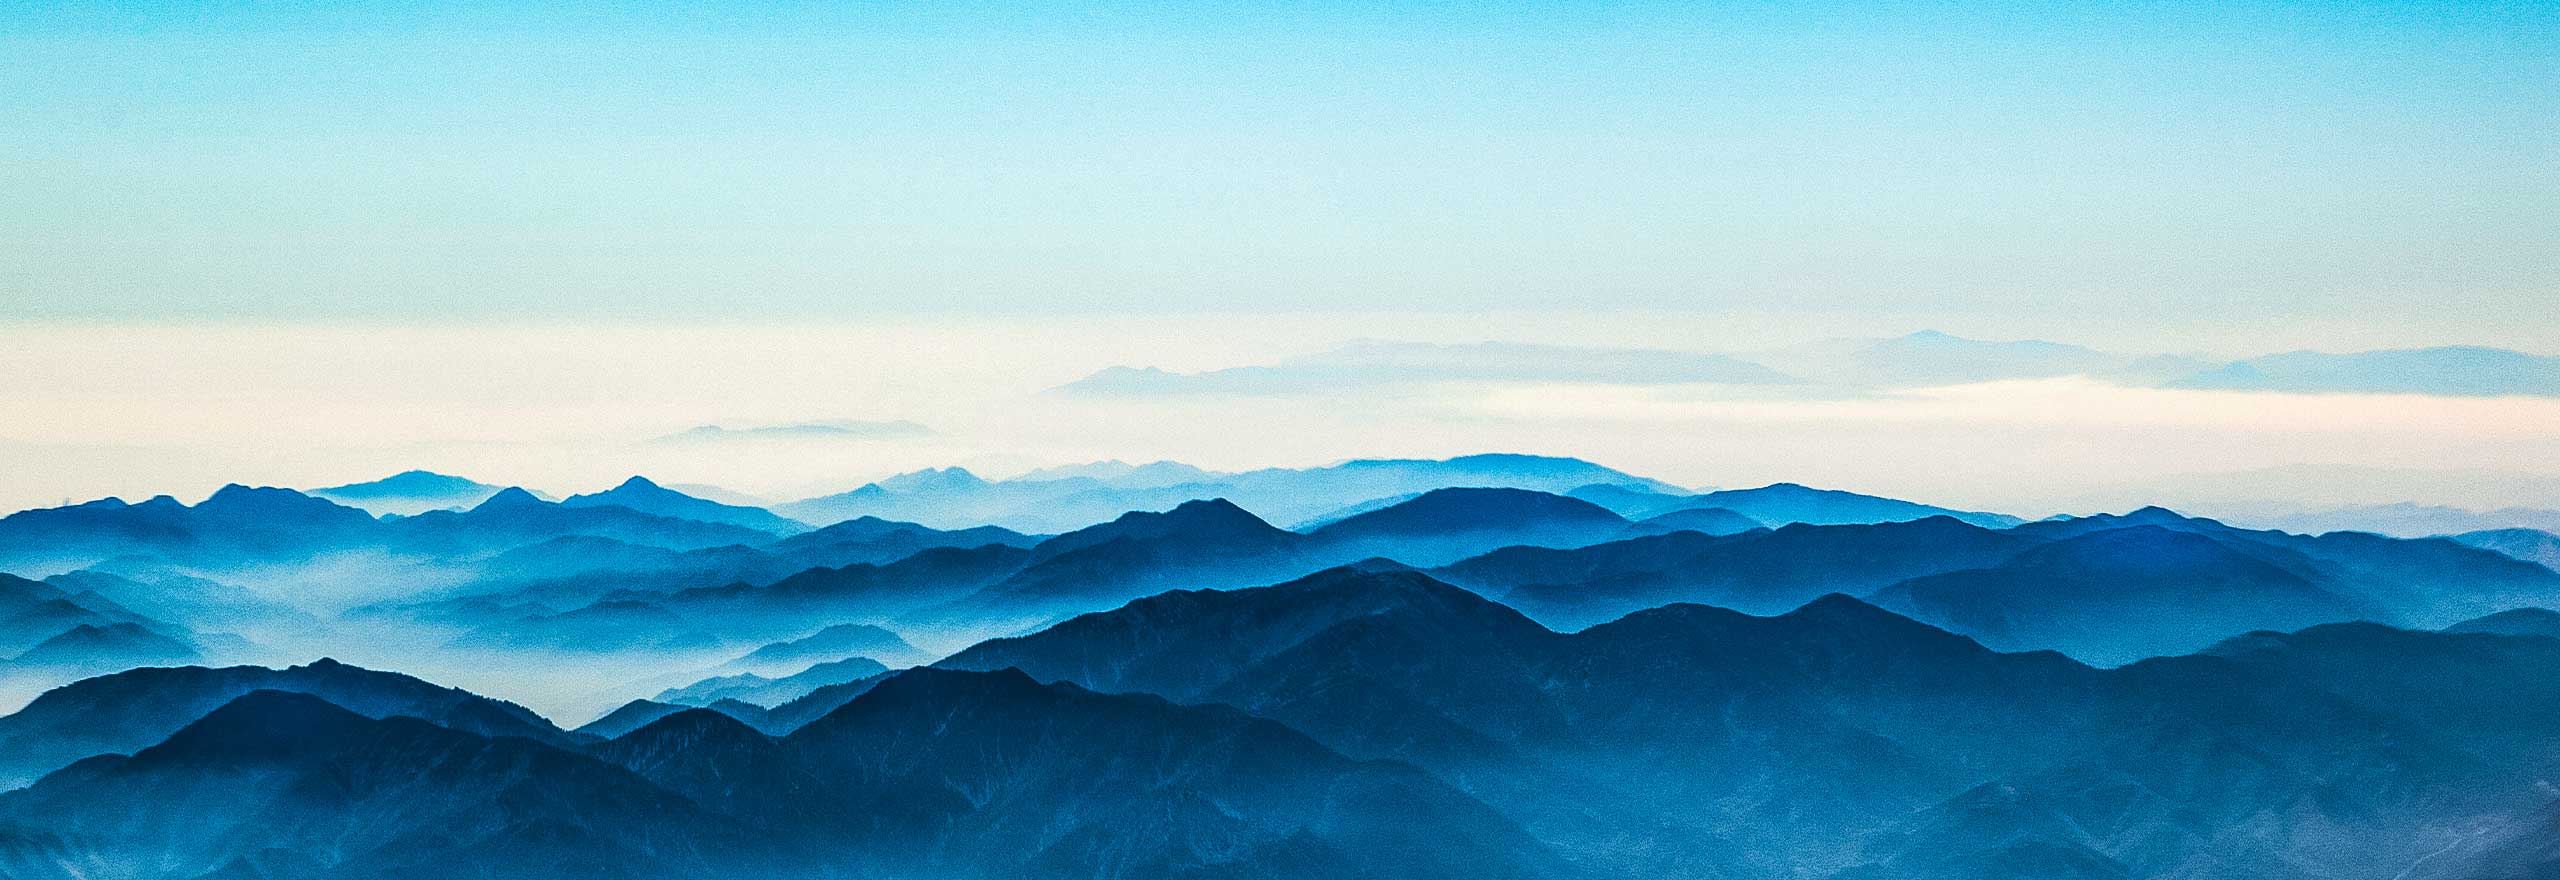 山脈に立ち込める霧の航空画像。